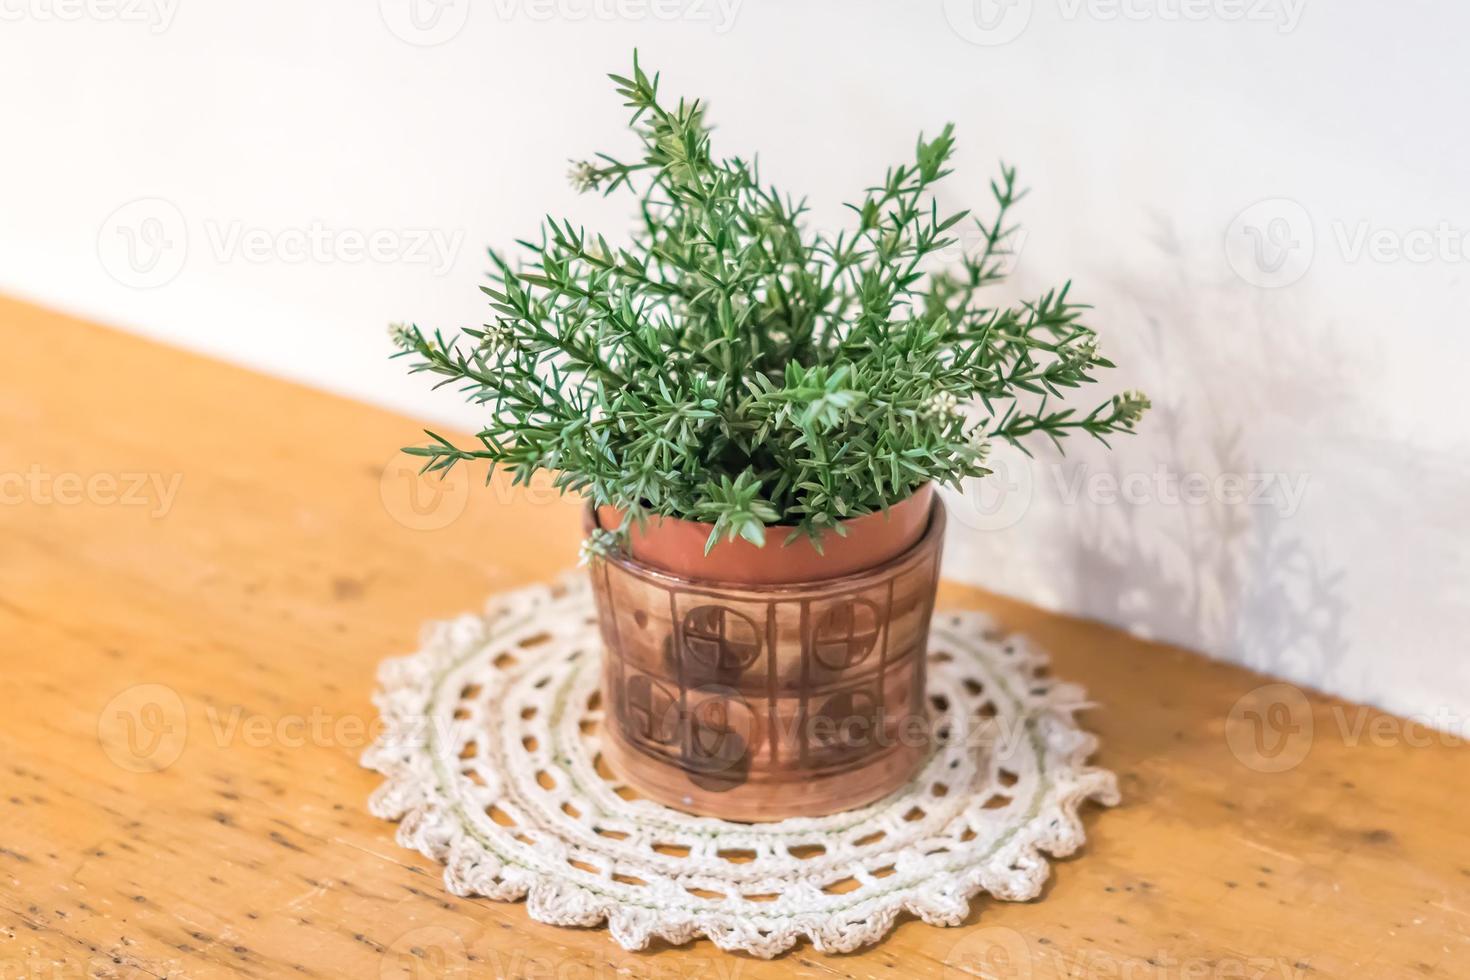 pequena planta verde em vaso decorativo na mesa de madeira foto